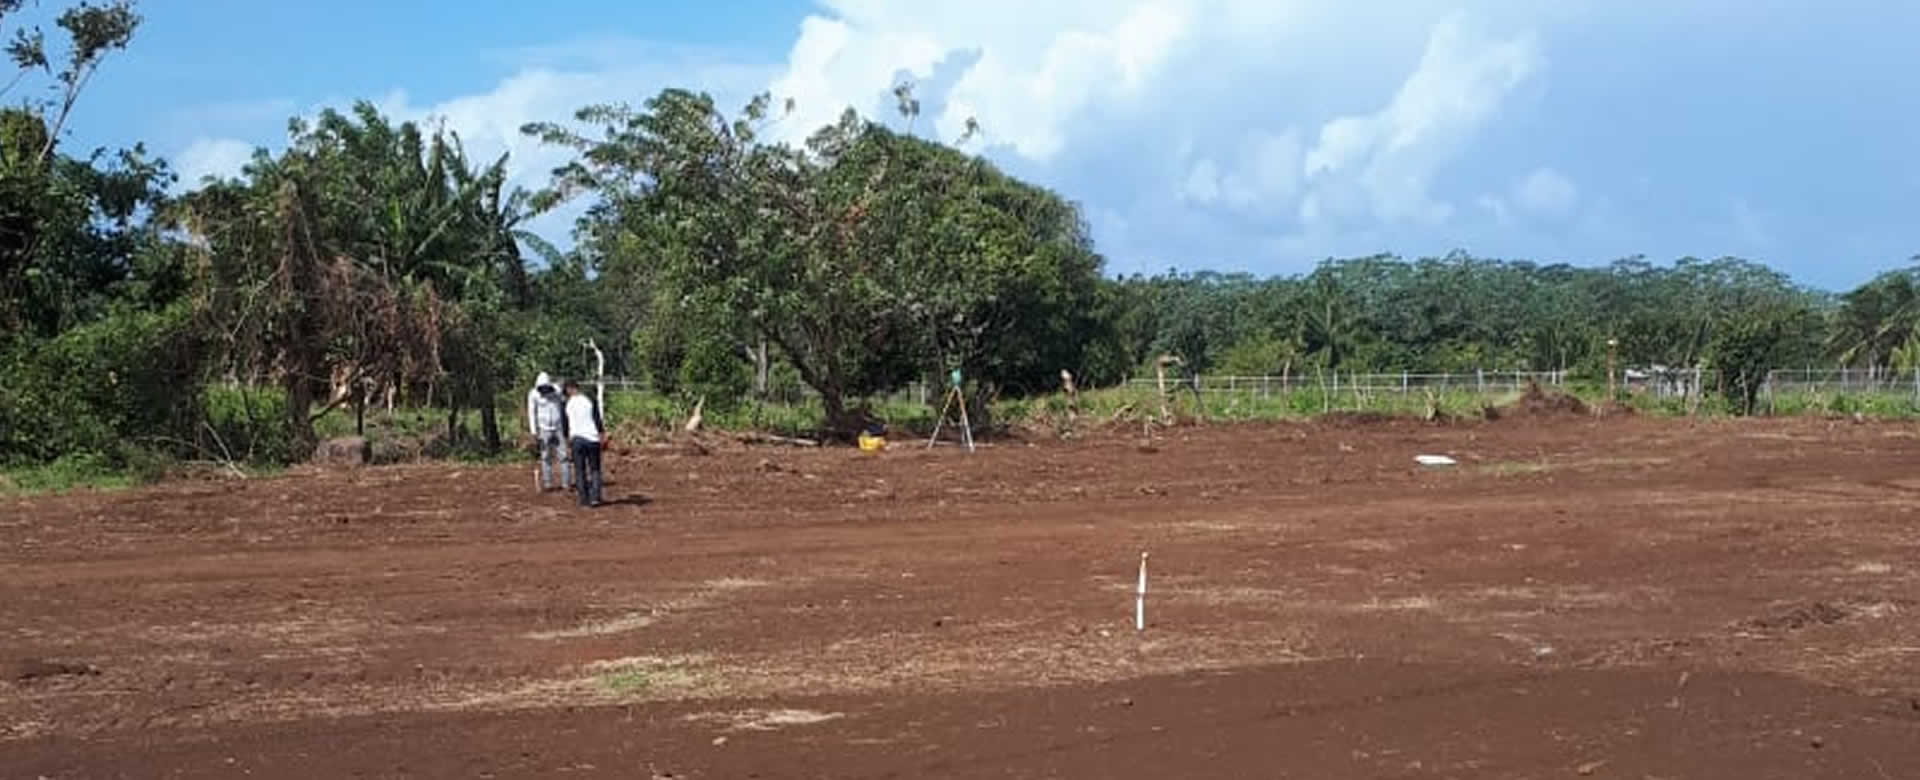 Avanzan obras en Corn Island para instalación de Planta Solar